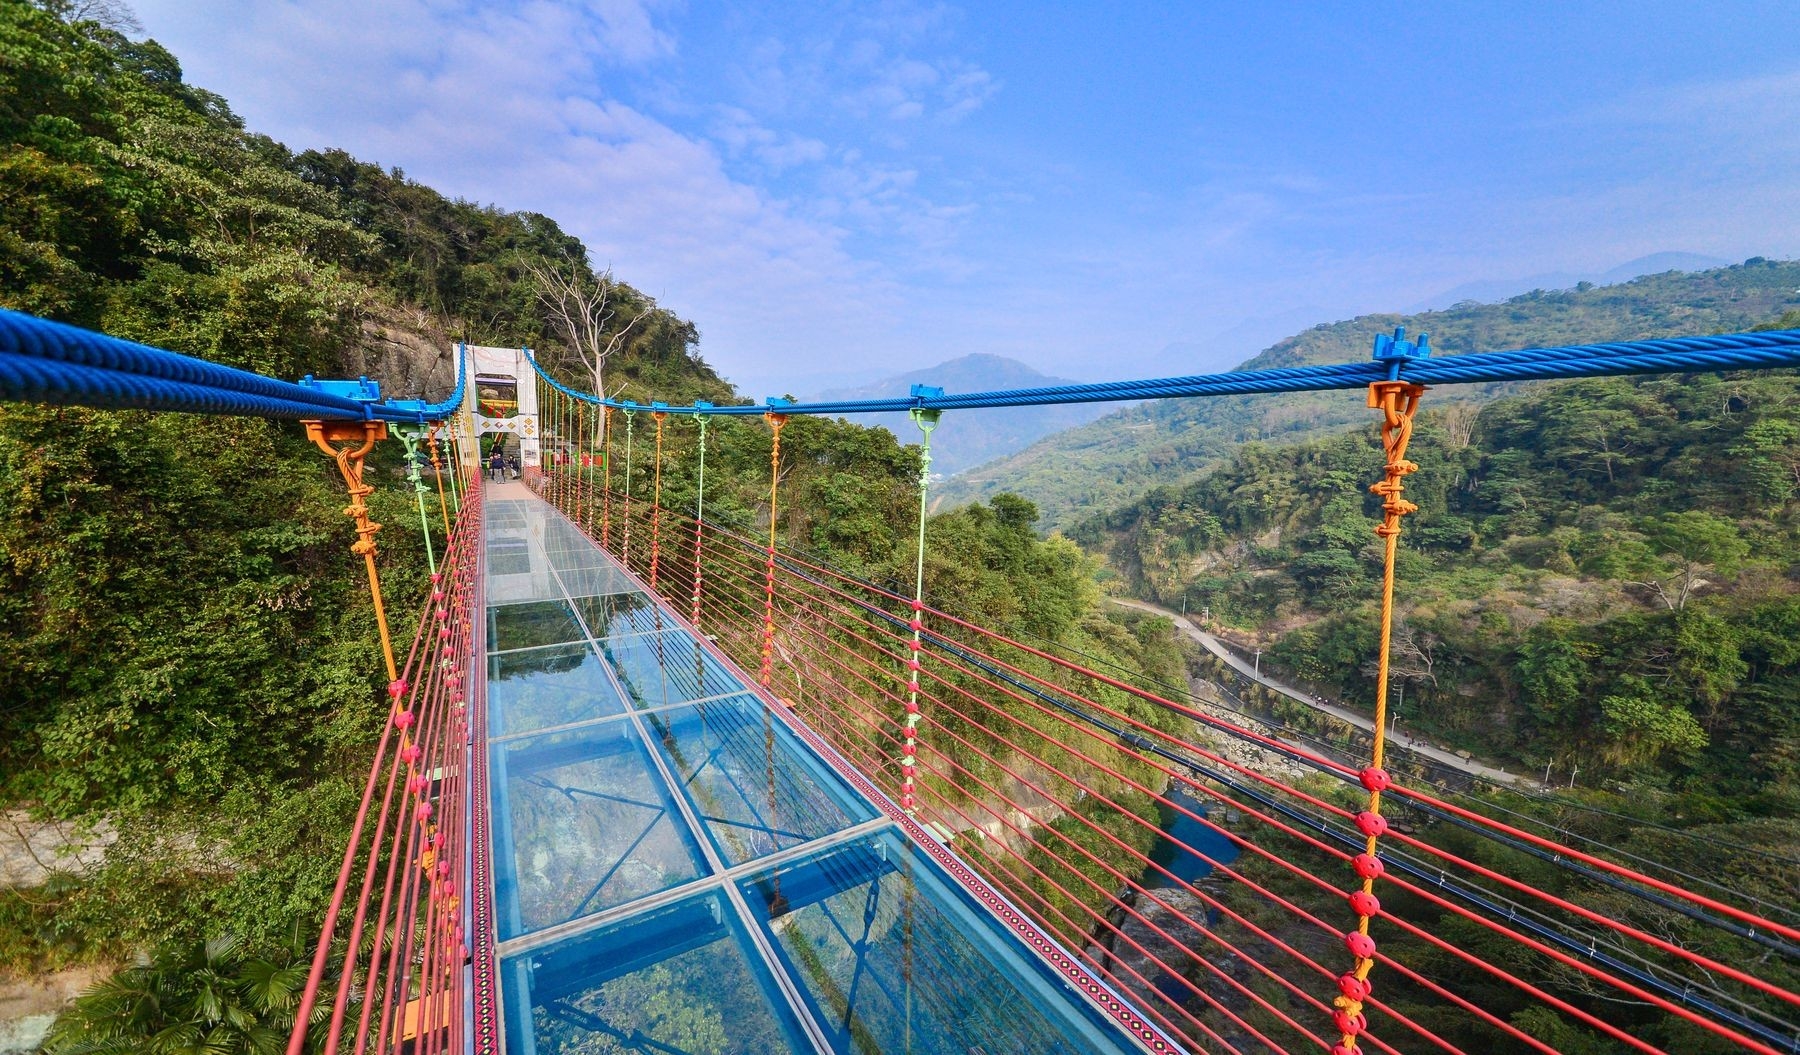 The transparent bridge at Ping-Lai Scenic Area